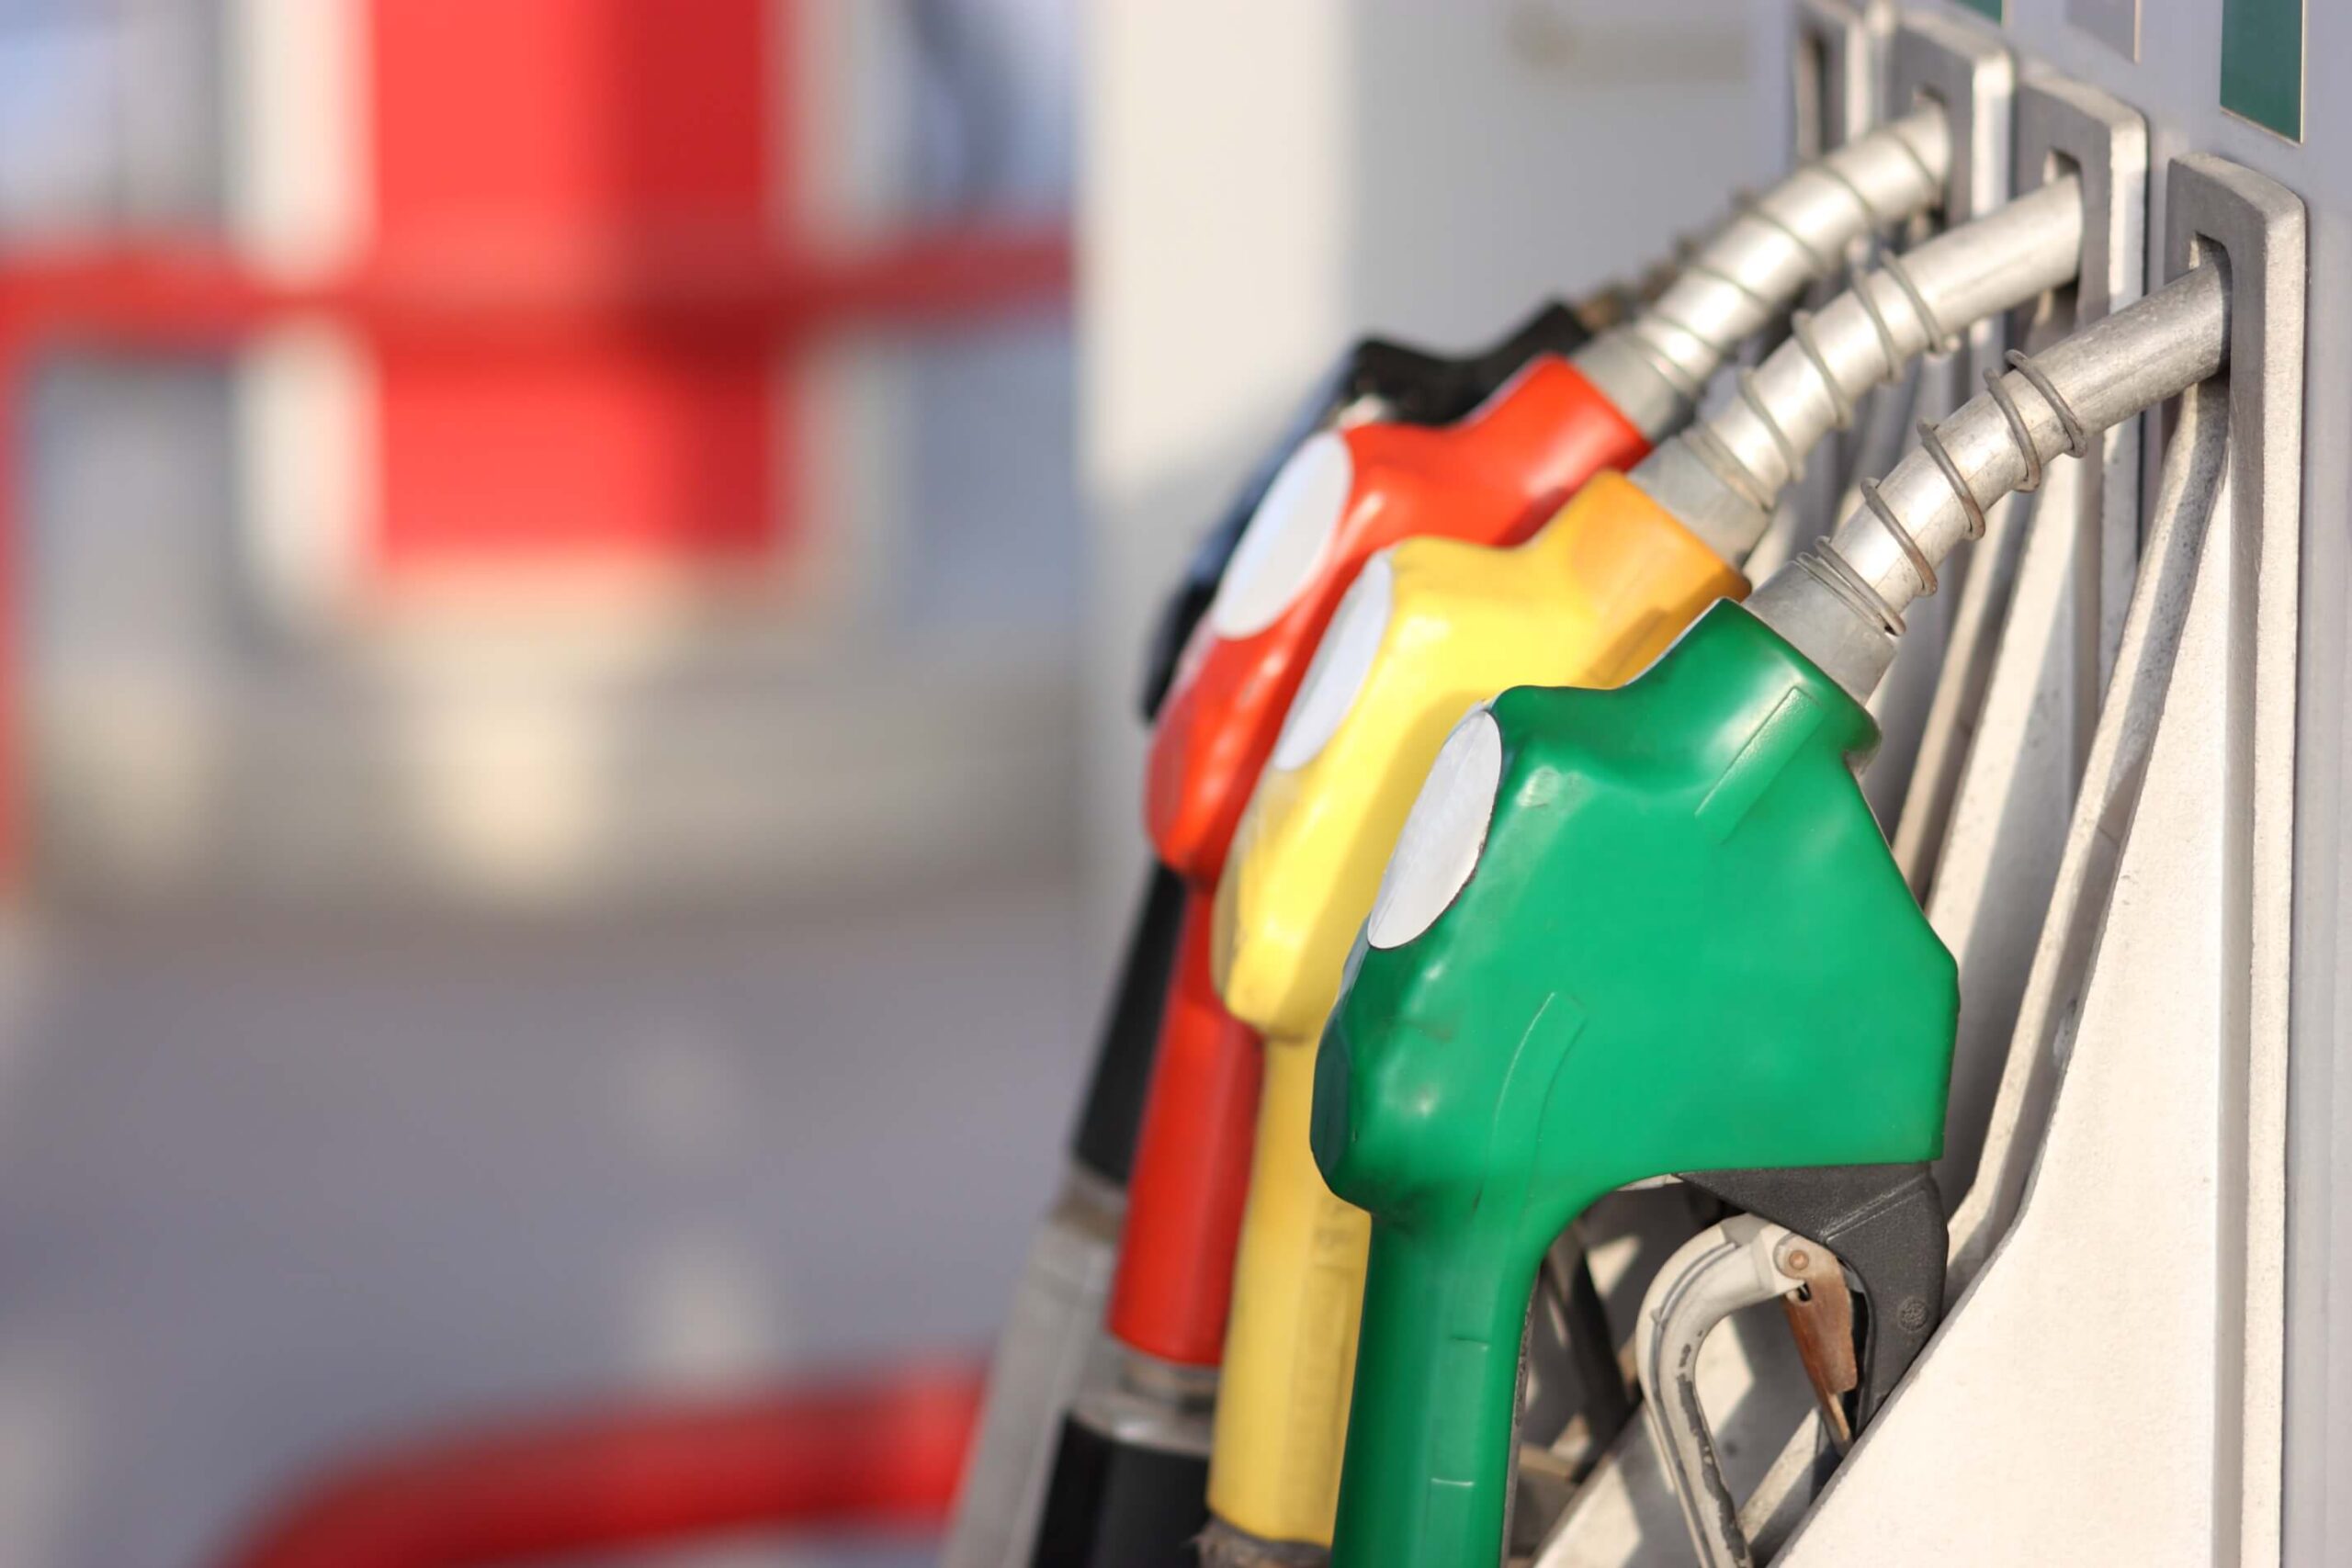 Combustíveis: Gasolina 95 vendida 2,2 cêntimos acima do Preço Eficiente. Gasóleo esteve 1,1 cêntimos mais caro